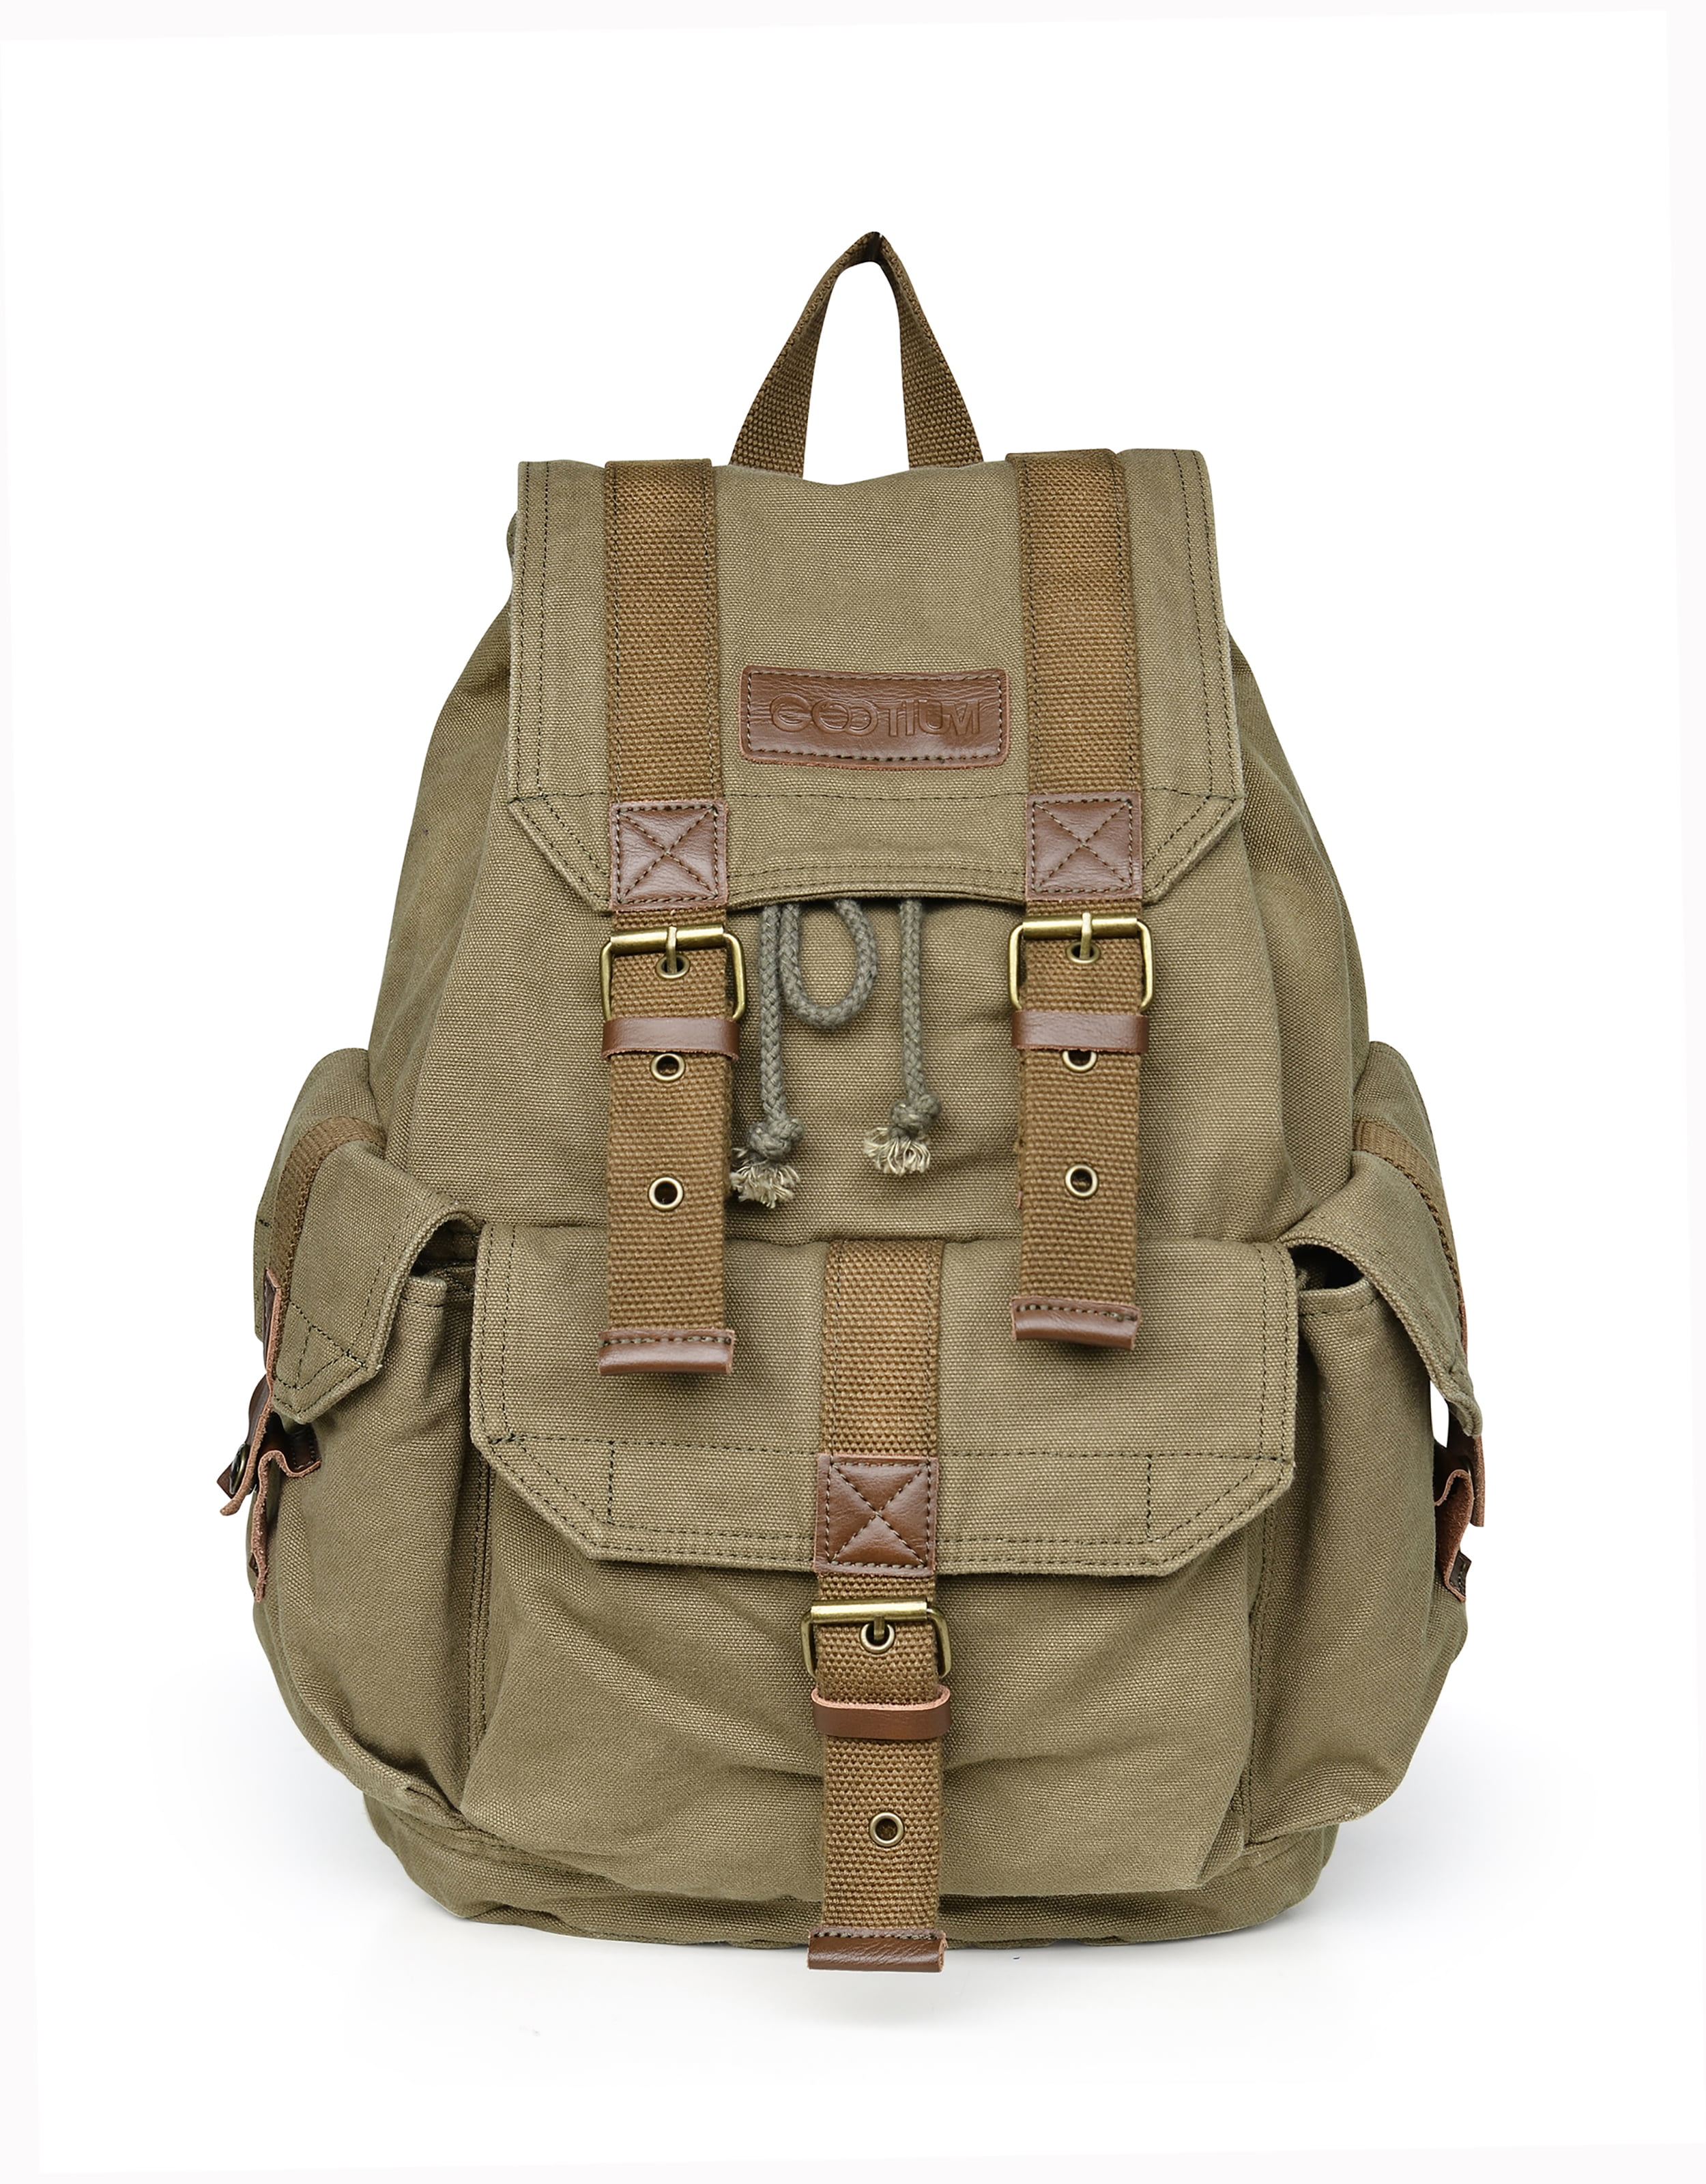 New  Men's Vintage Canvas Rucksack Bag Shoulder  Camping Backpack Travel Hiking